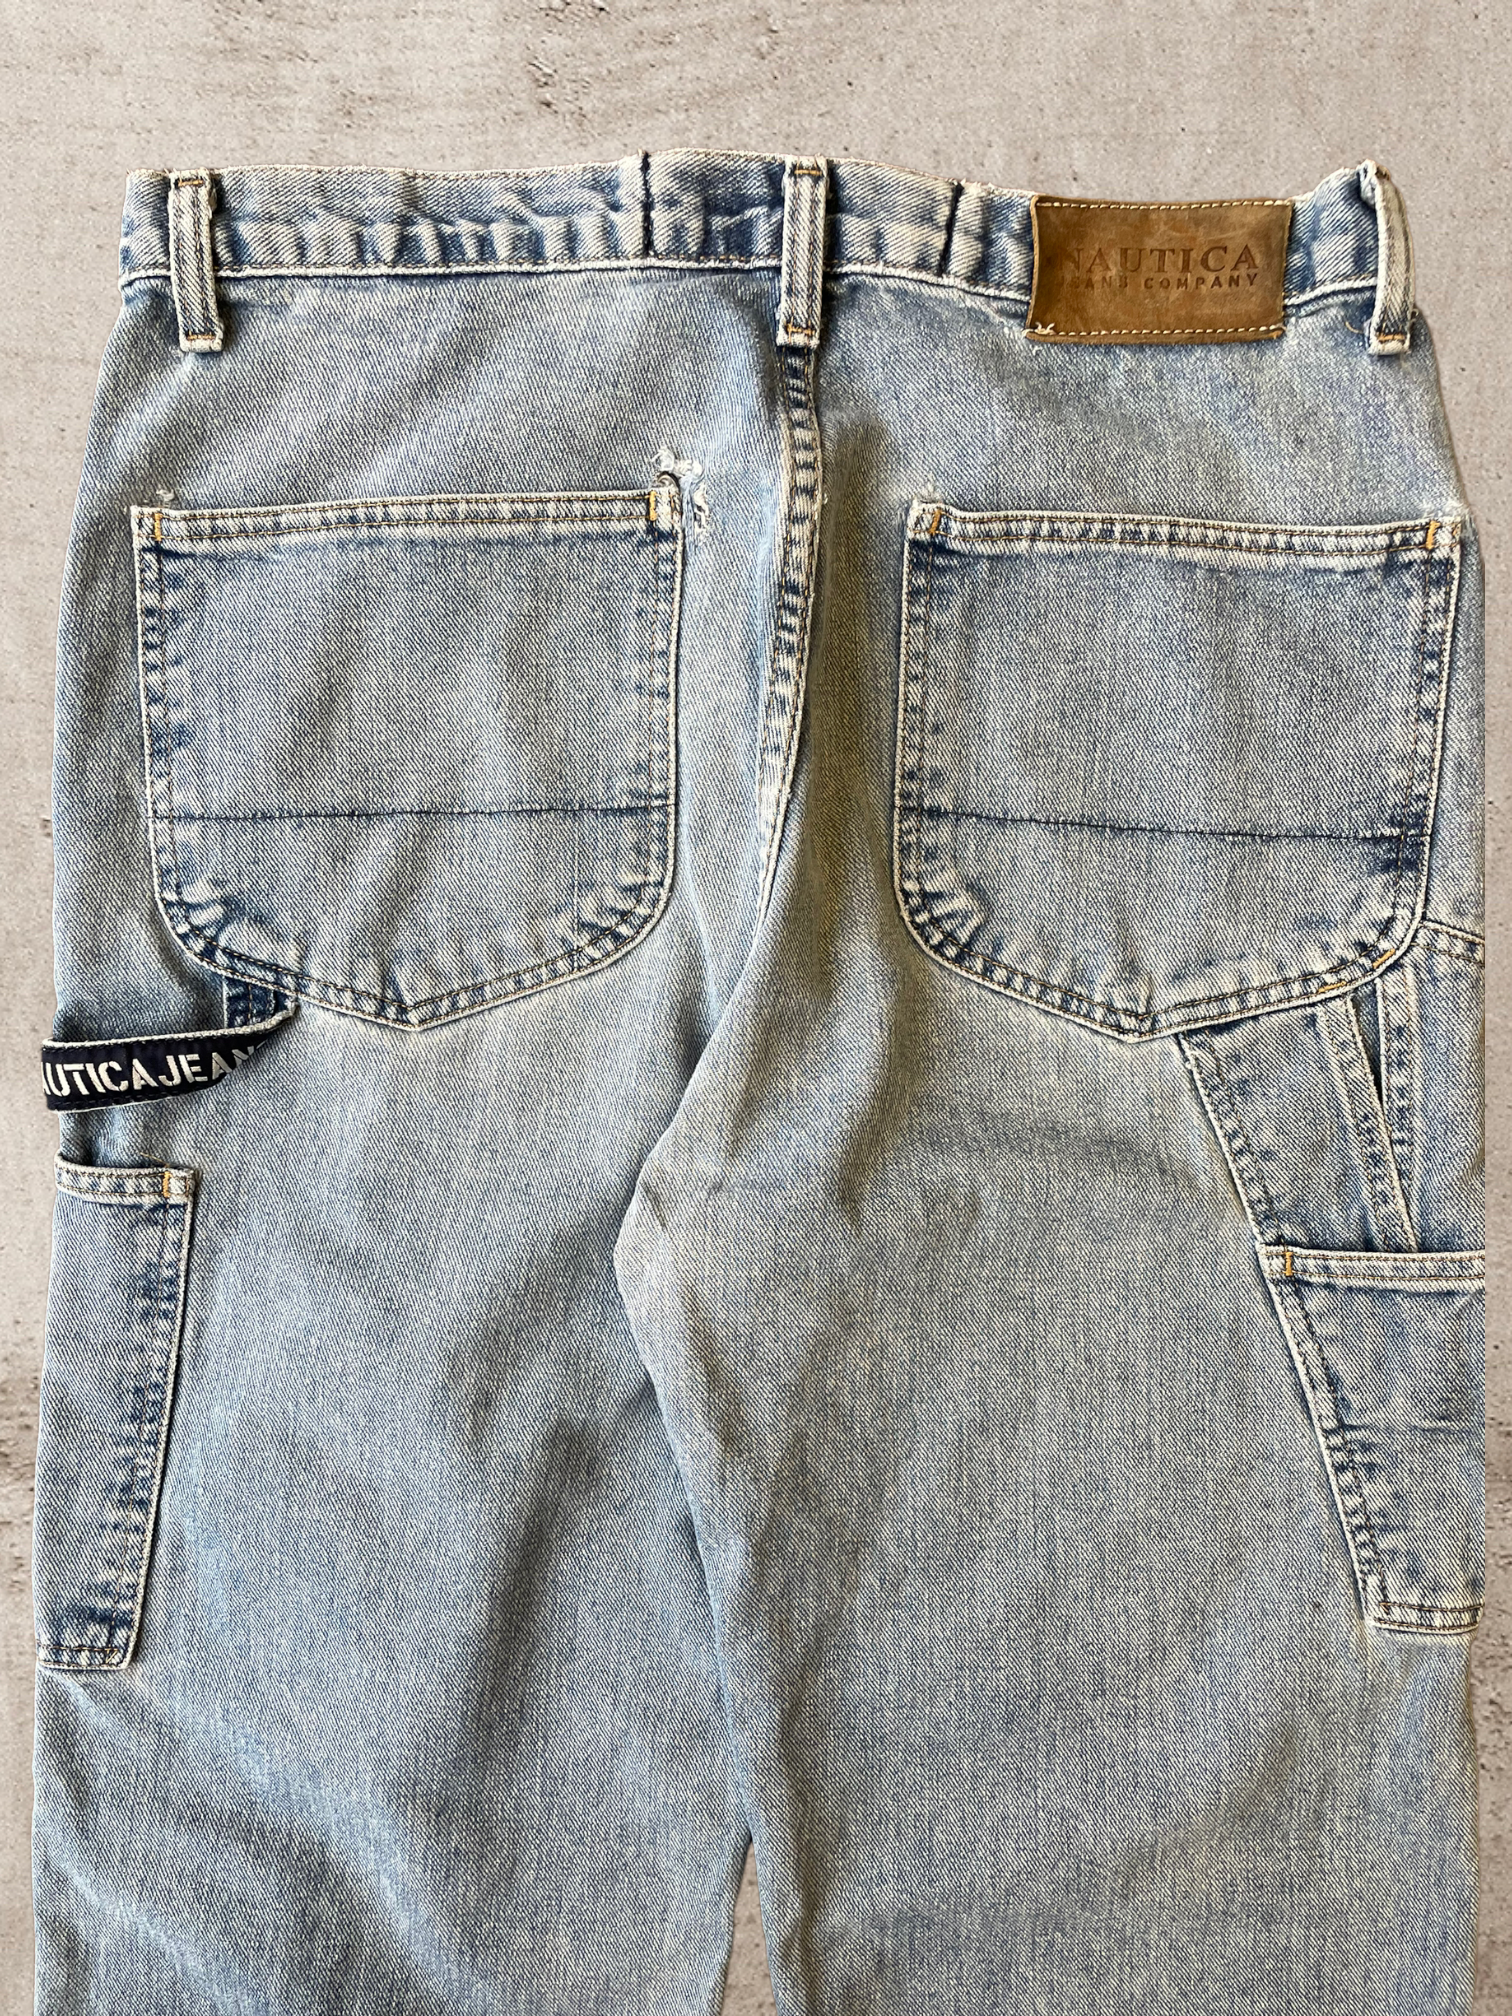 90s Nautica Carpenter Jeans - 34x32